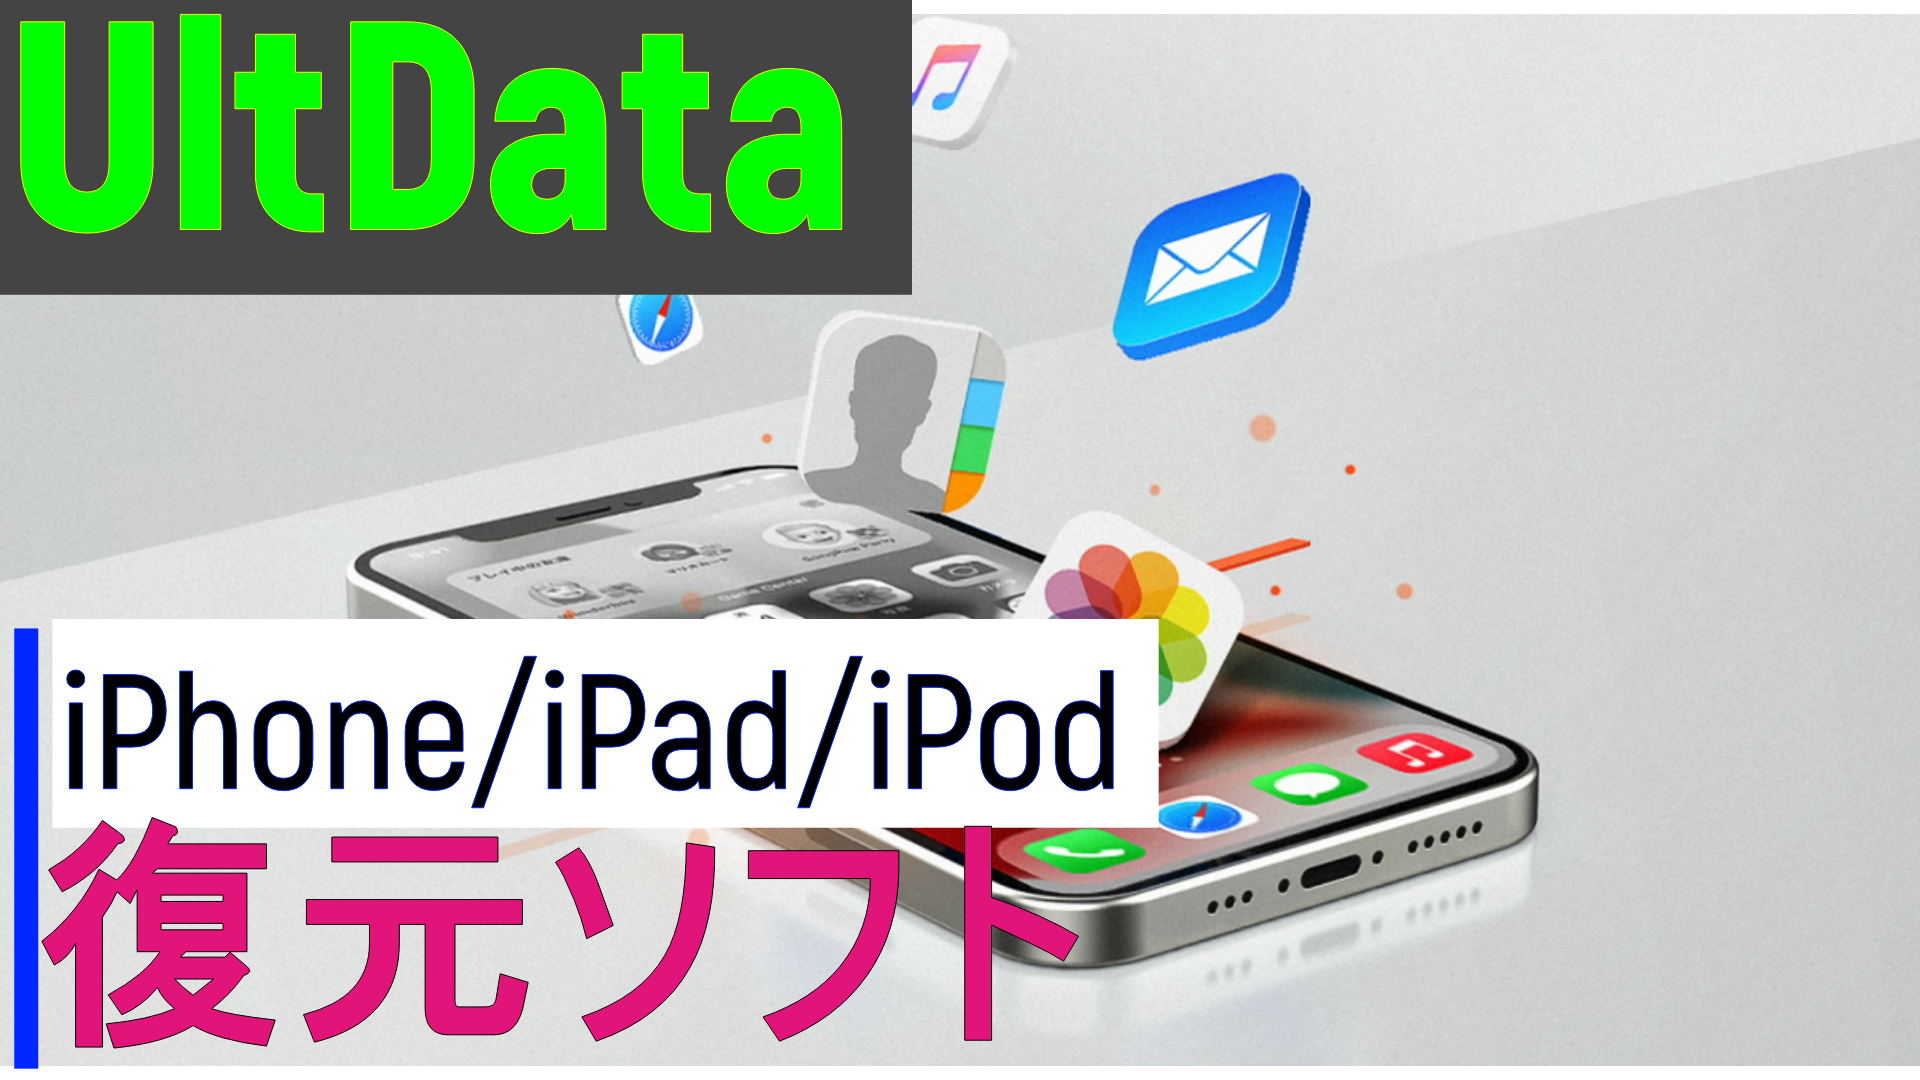 dorublog | 【おすすめ】iPhoneデータ復元ソフト-Tenorshare UltData 評価 使用感想